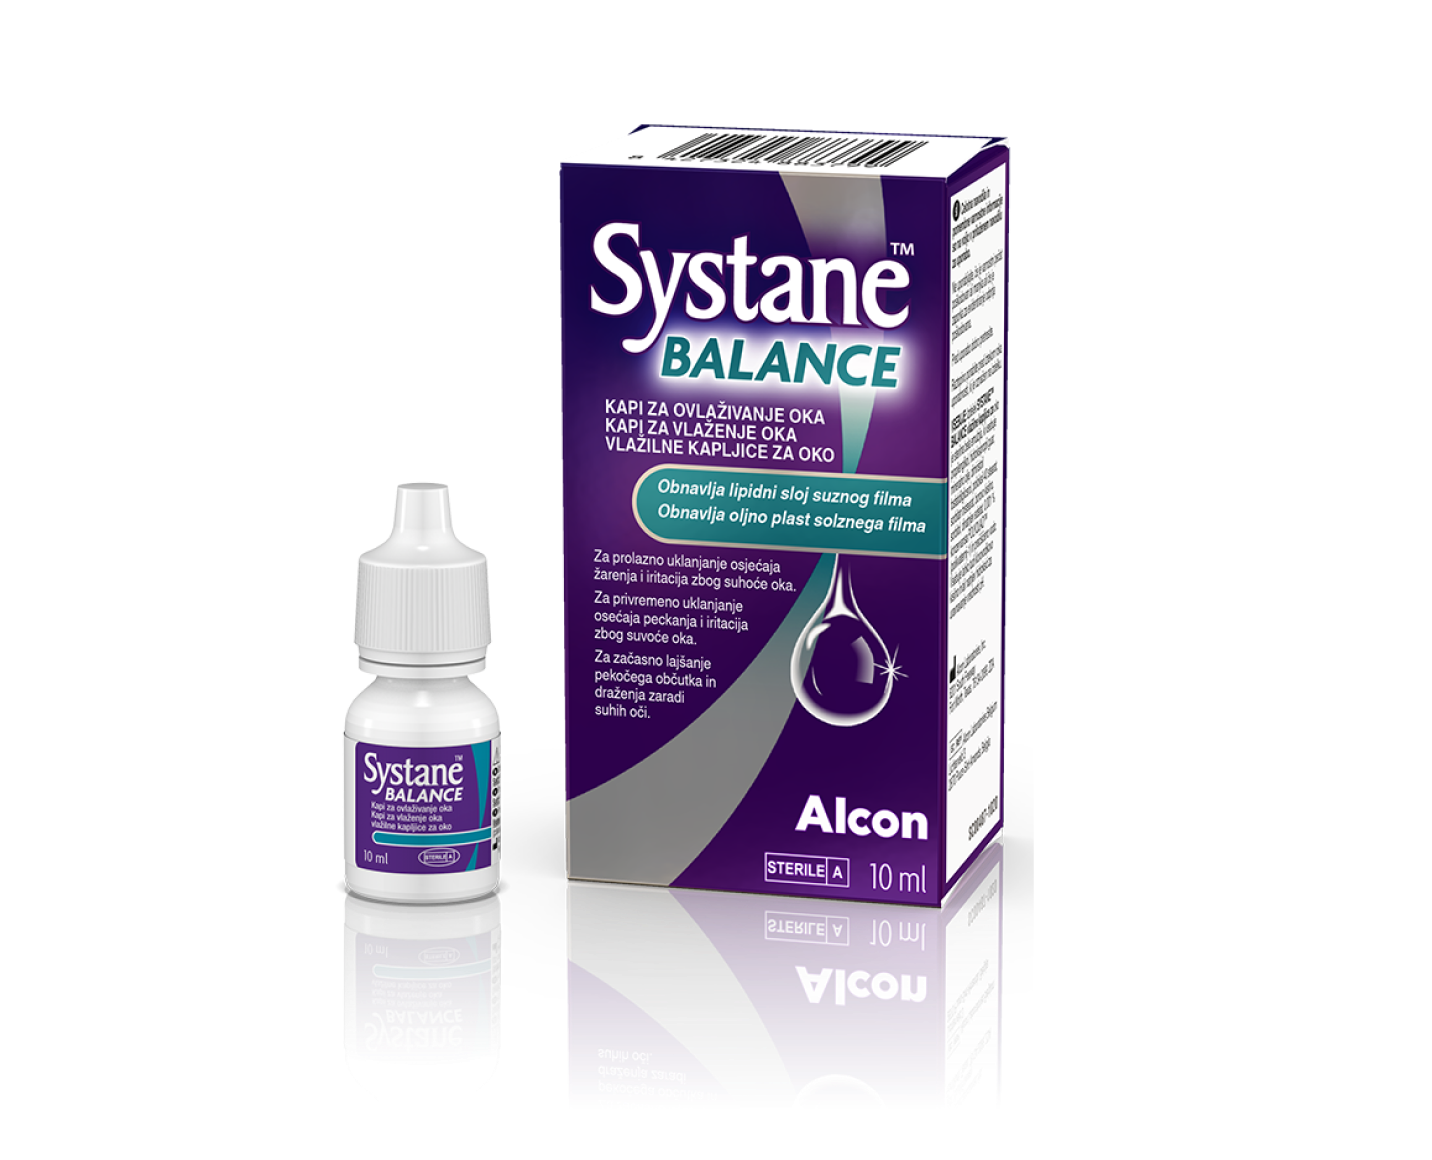 Systane® BALANCE kapi za ovlaživanje oka, kutija proizvoda i kartonska kutija bočice